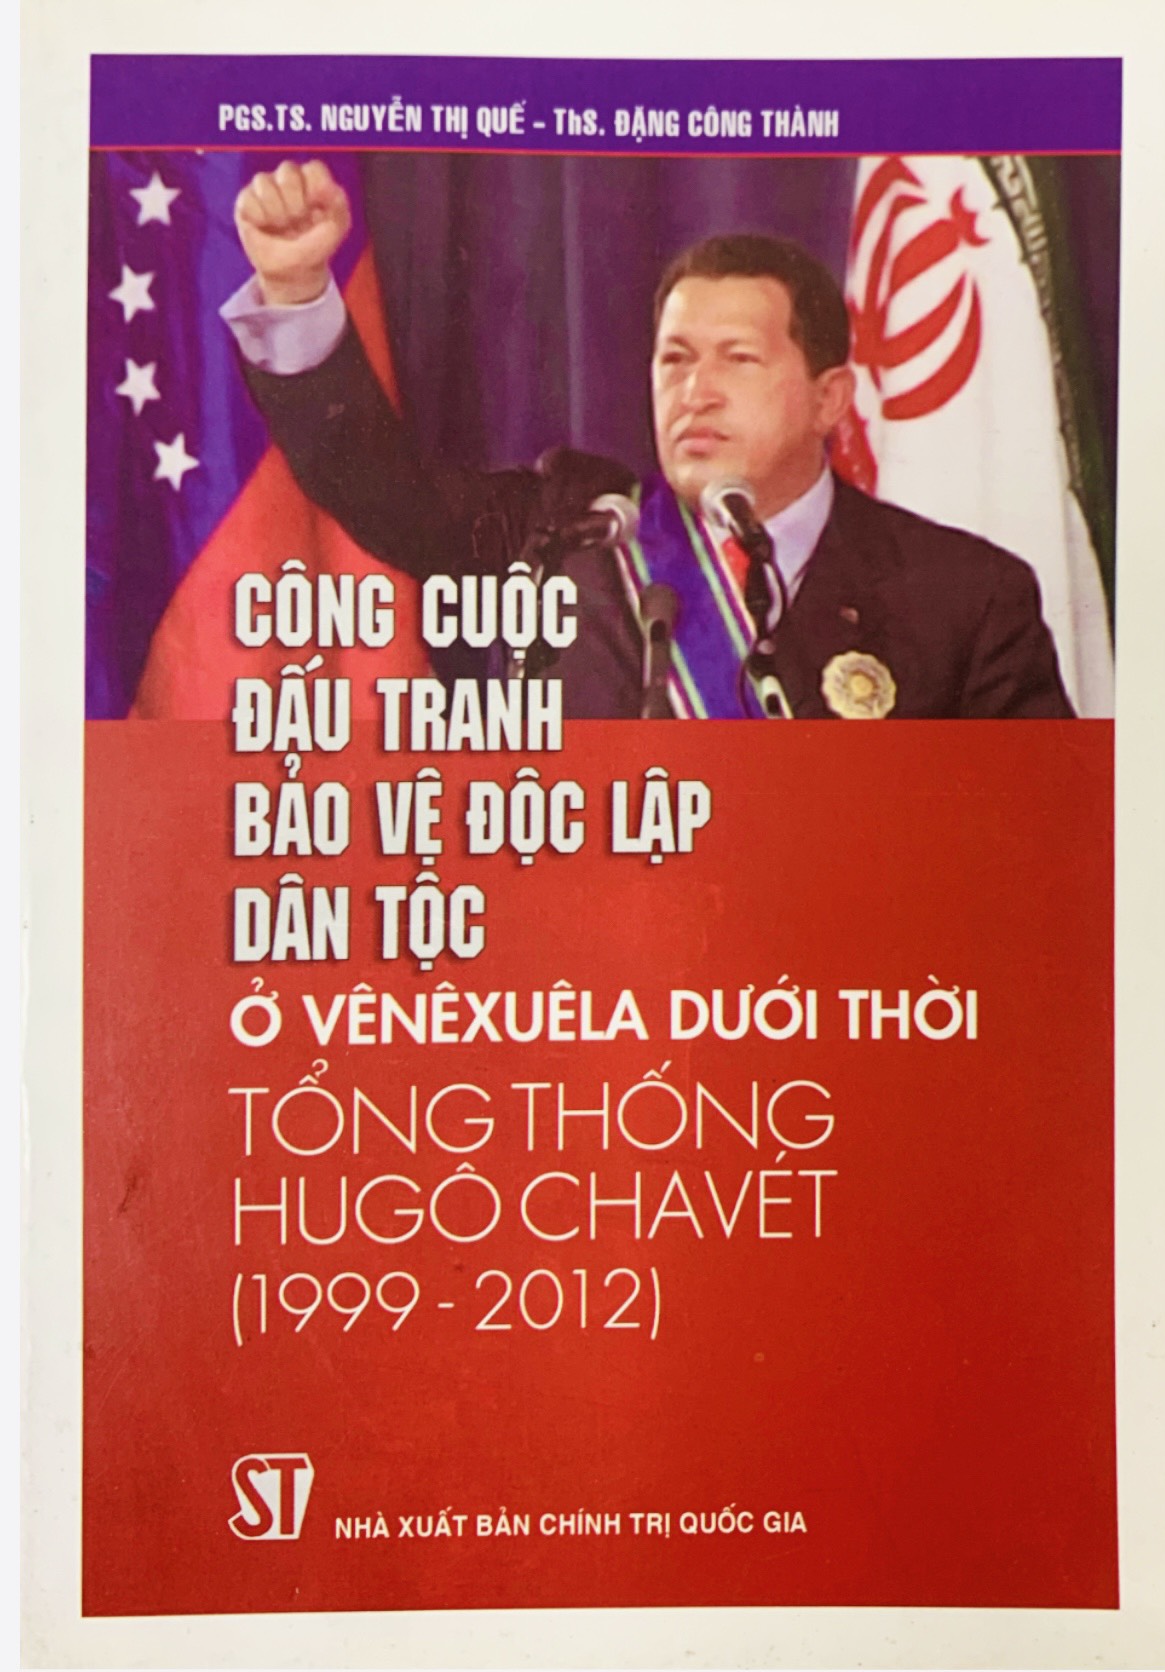 Công cuộc đấu tranh bảo vệ độc lập dân tộc ở Vênêxuêla dưới thời Tổng thống Hugô Chavét (1999-2012) (xuất bản 2014)